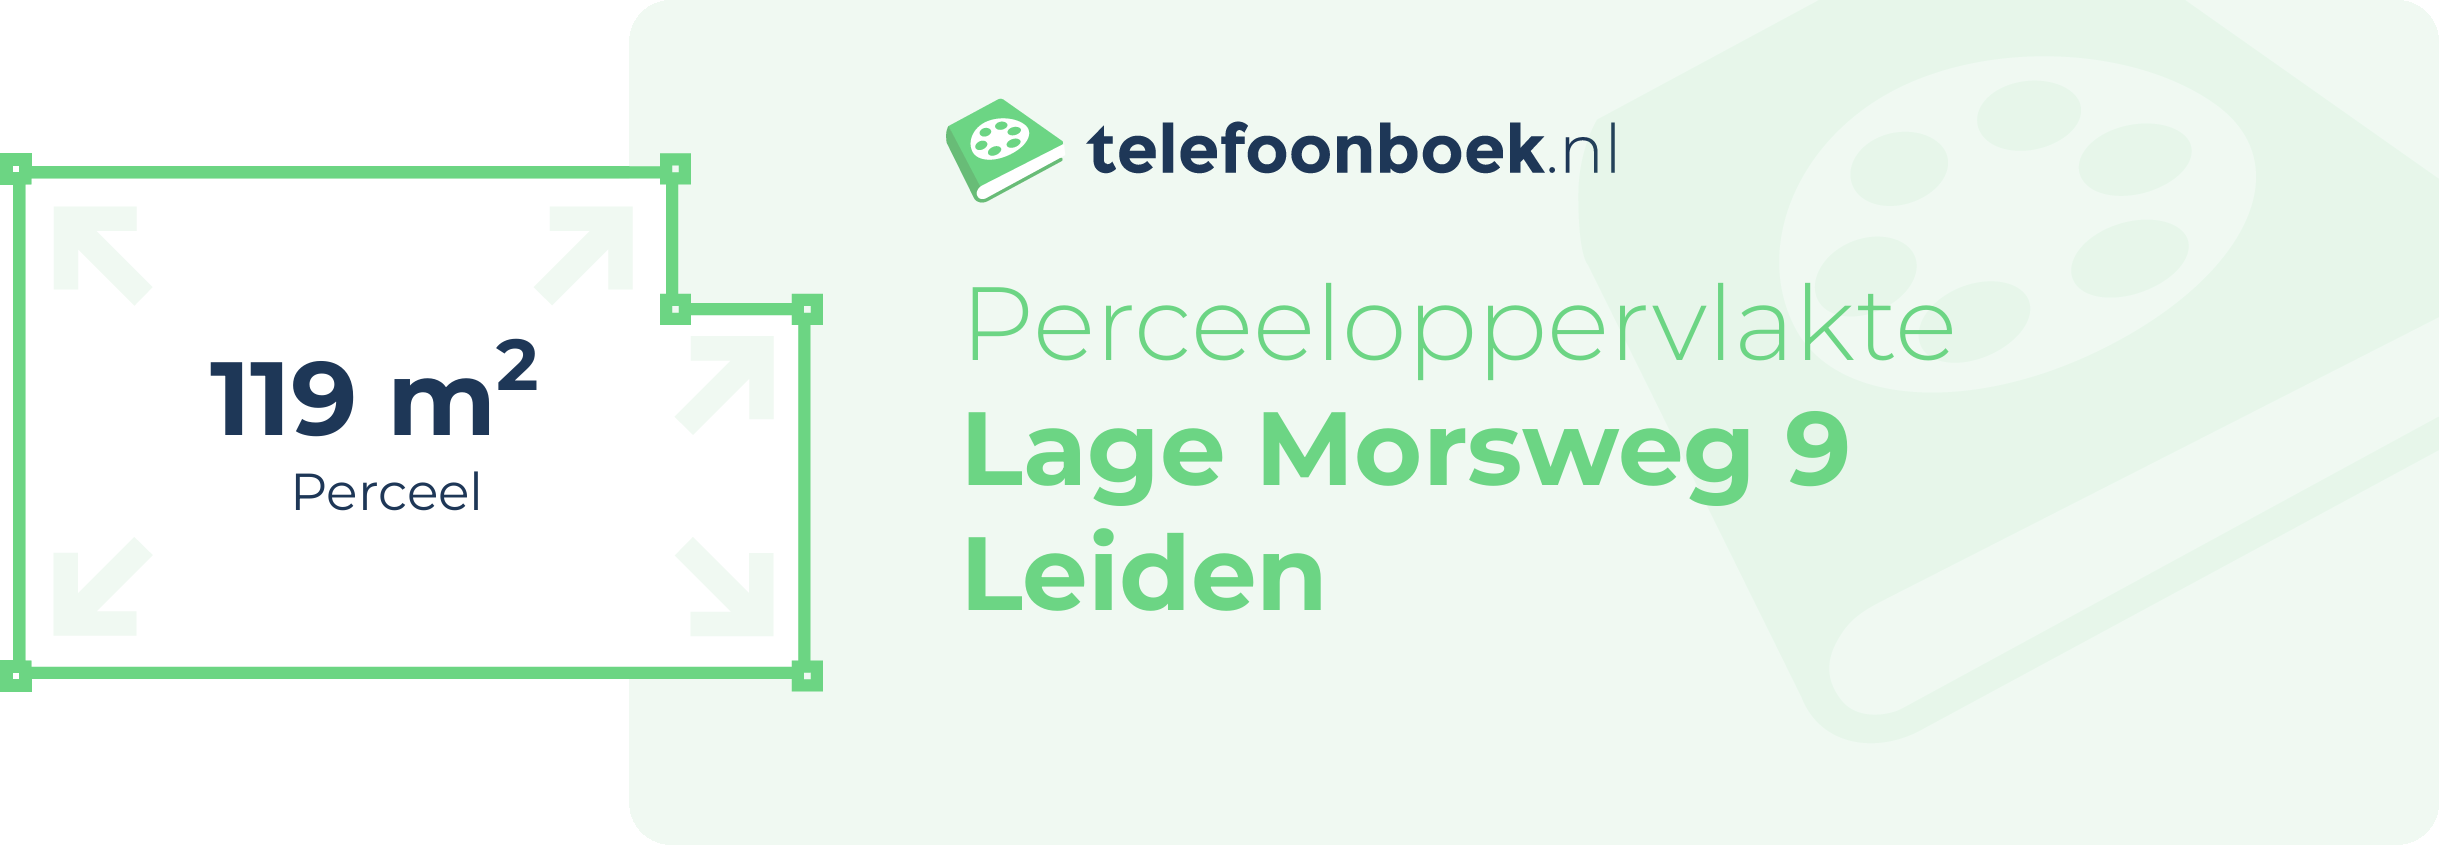 Perceeloppervlakte Lage Morsweg 9 Leiden